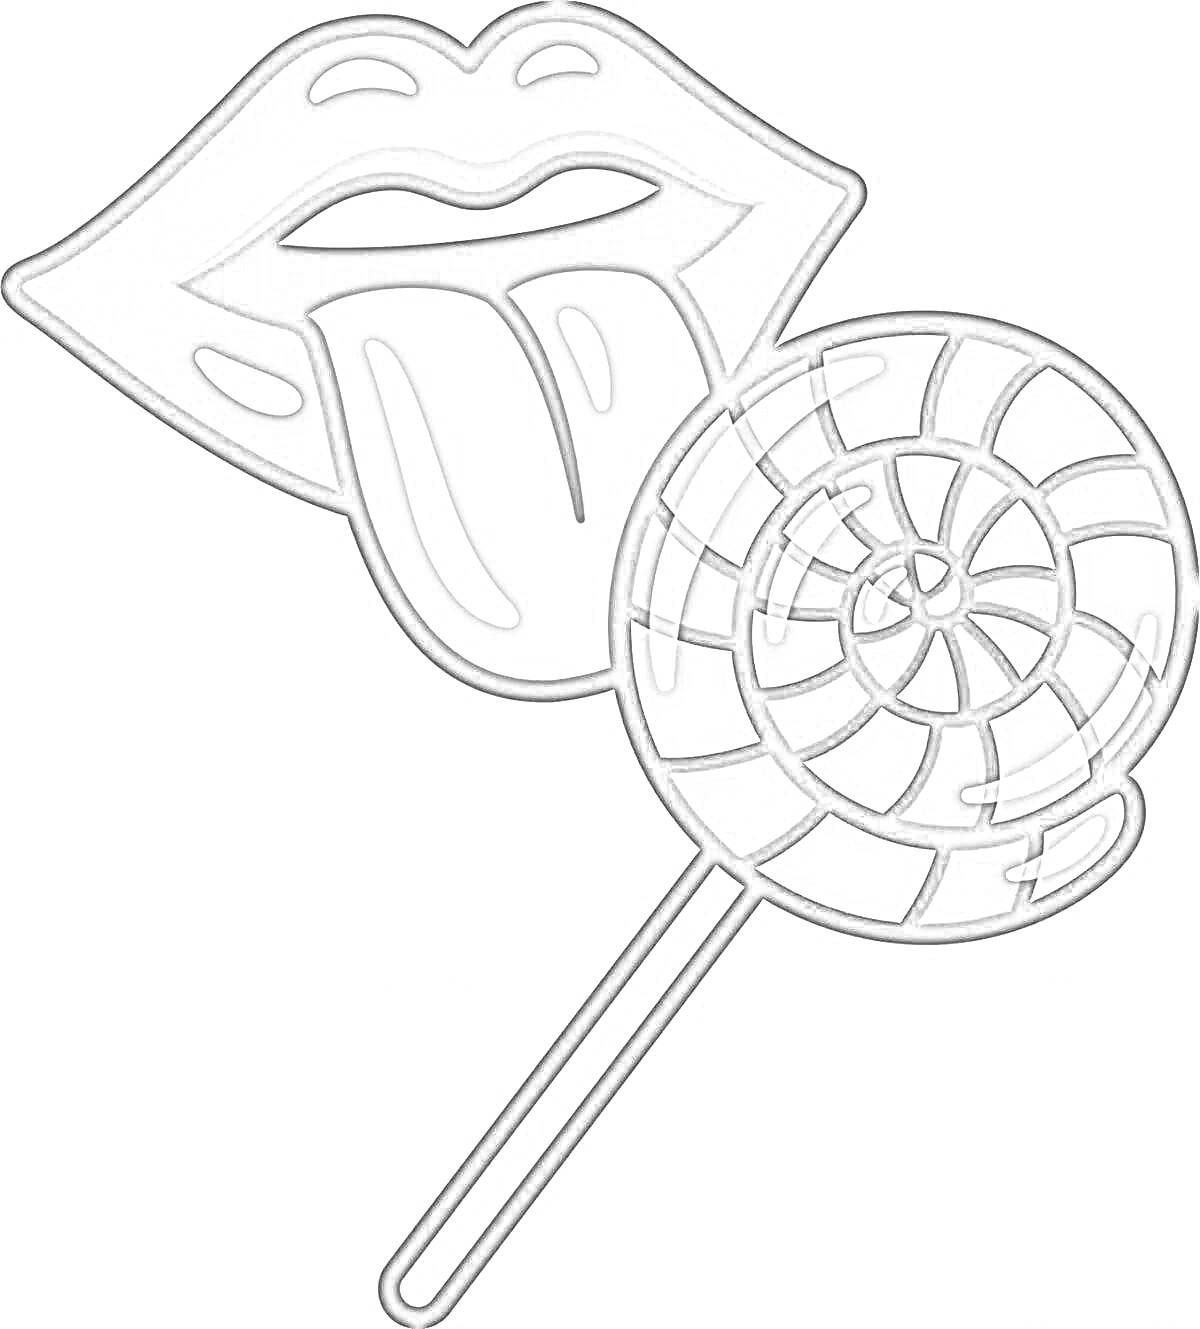 Раскраска Рот с высунутым языком и леденец на палочке